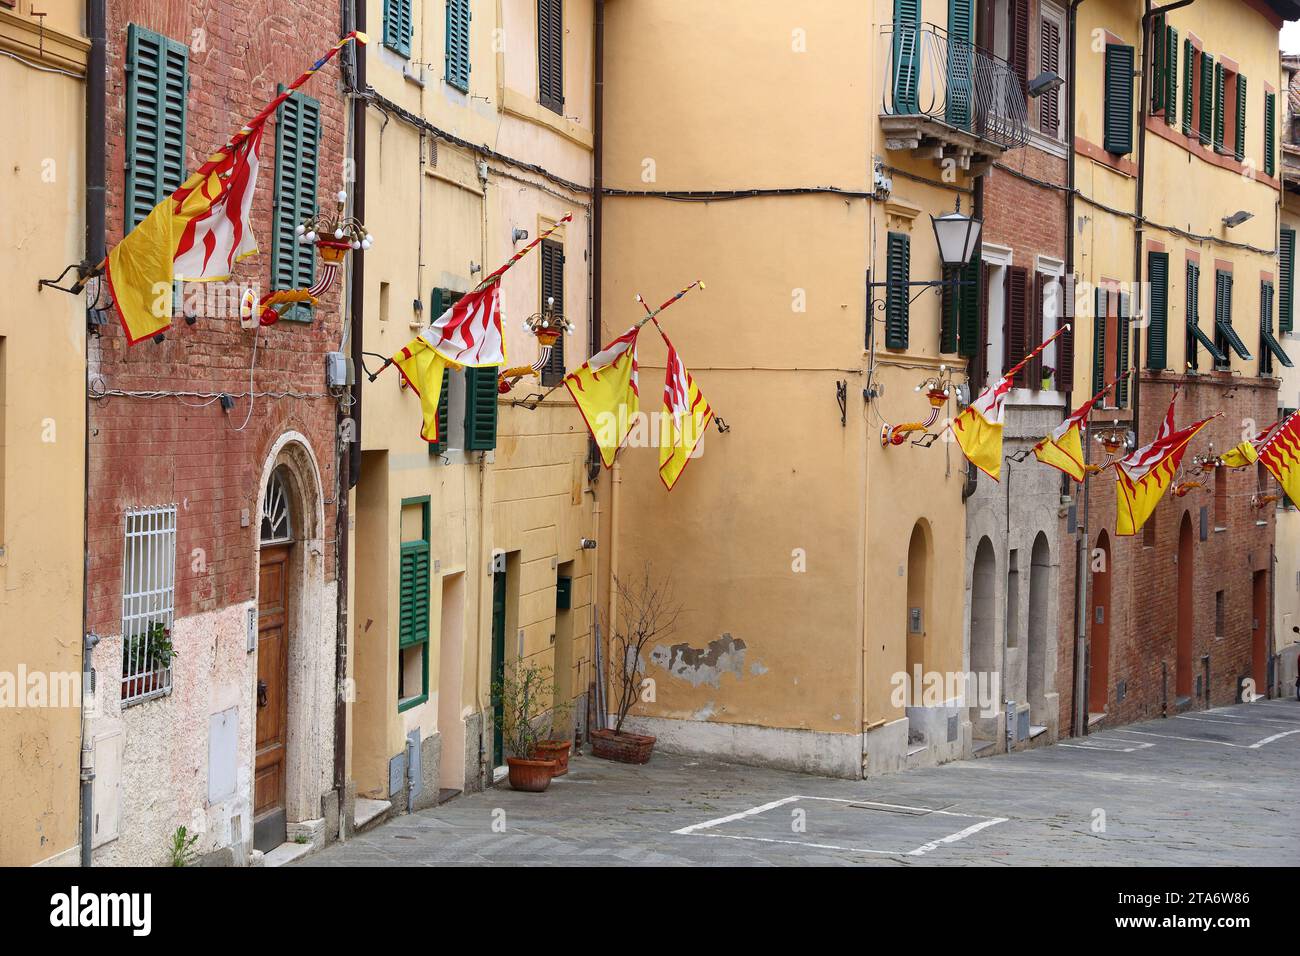 Siena, Italien. Die Altstadt ist in traditionellen Bezirke (Contrade) mit unterschiedlichen Fahnen und Farben aufgeteilt. Valdimontone (Tal der Ram). Stockfoto